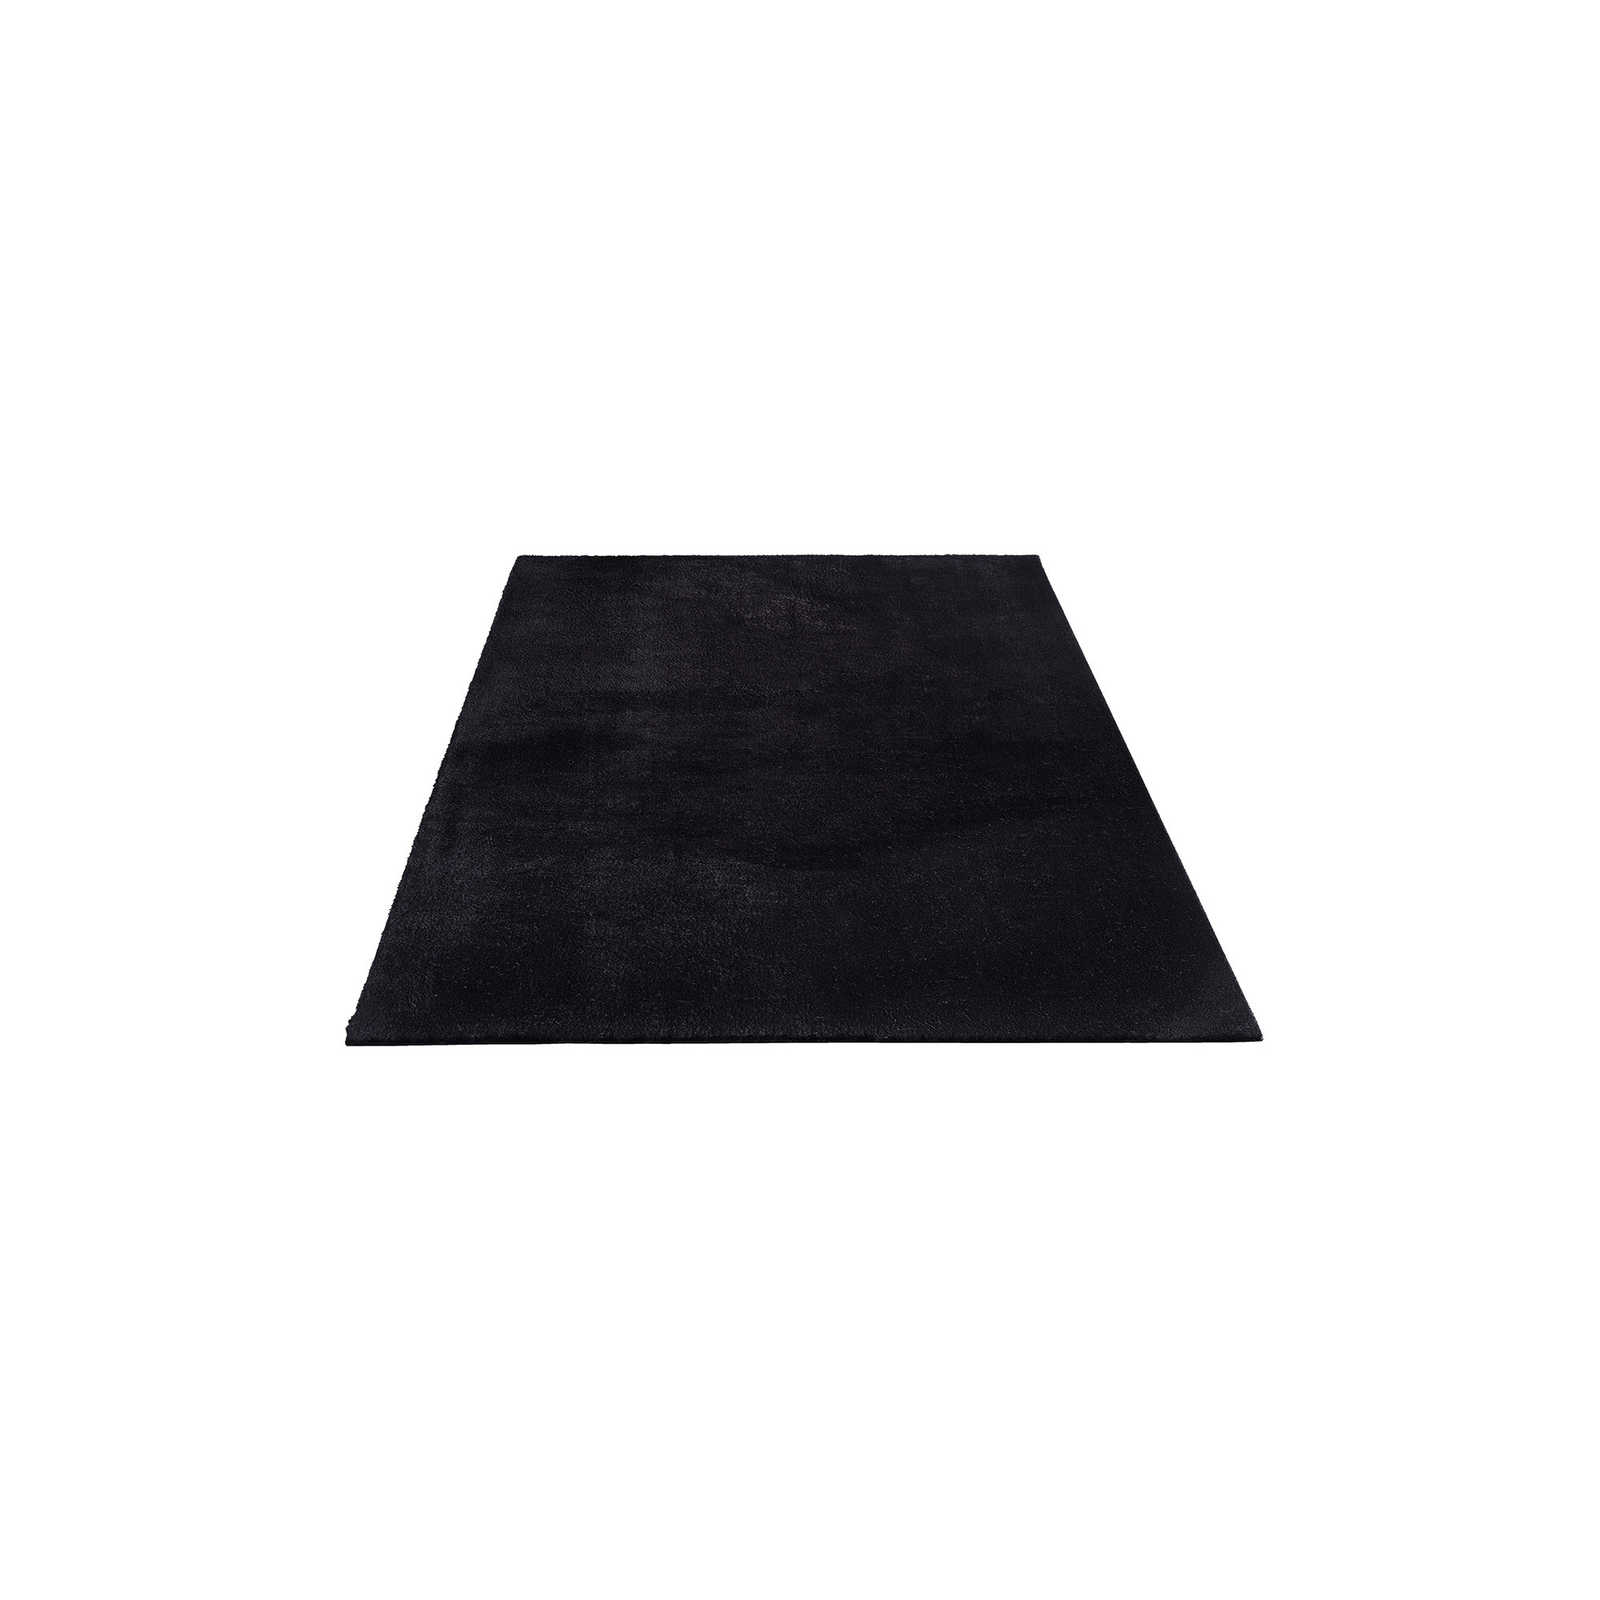 Fluweelzacht hoogpolig tapijt in zwart - 200 x 140 cm
